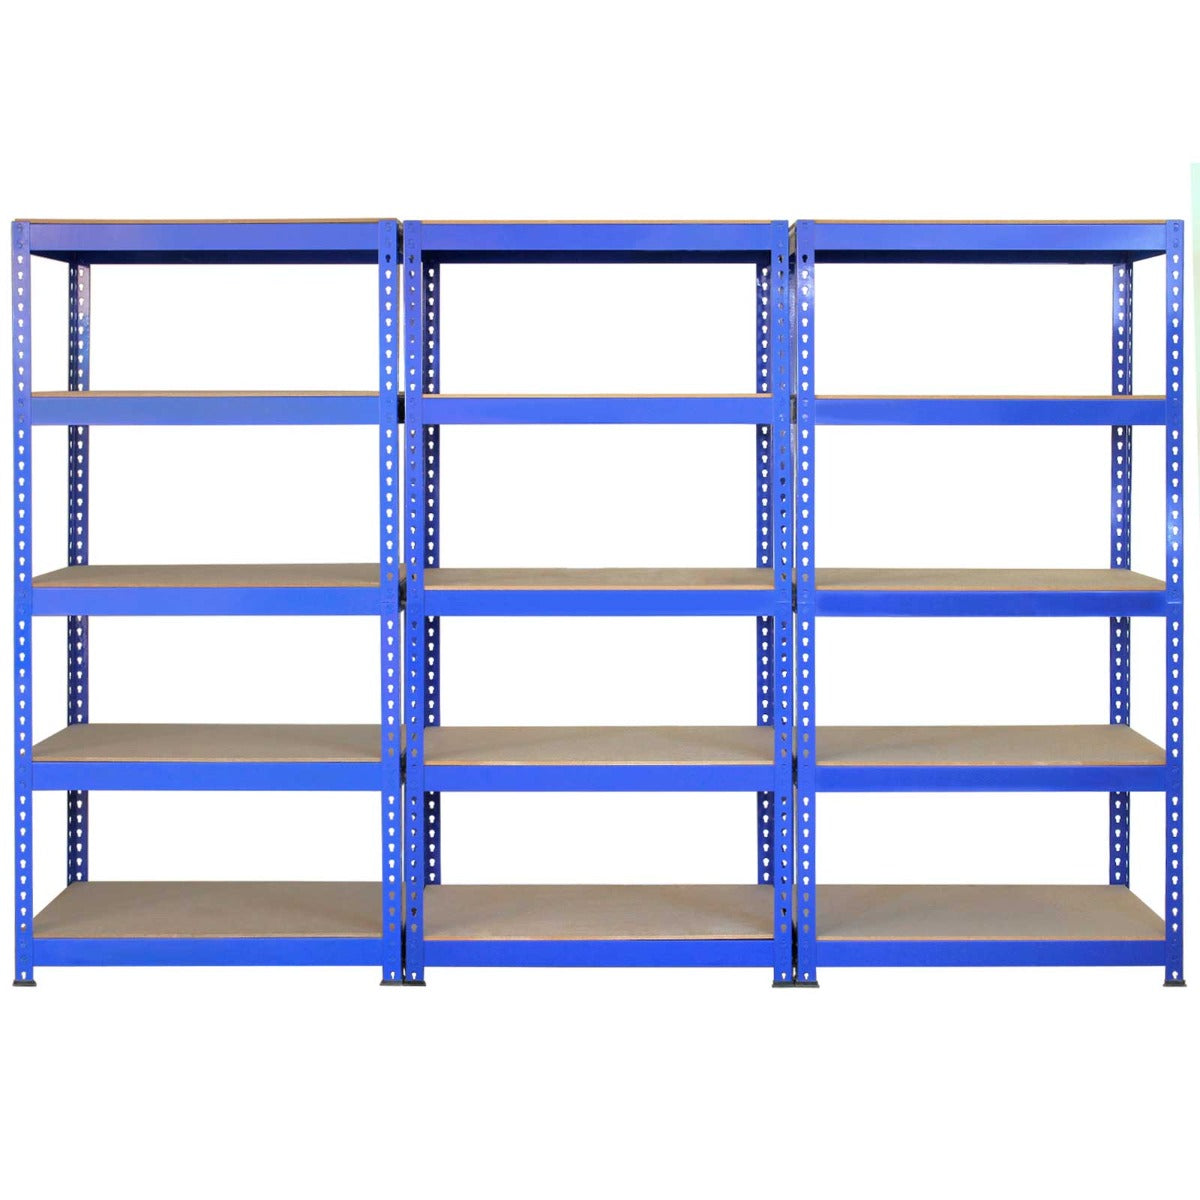 3 x Unidades de estantería metálicas Q-Rax en color azul de 90 cm, banco de trabajo y mazo de goma.